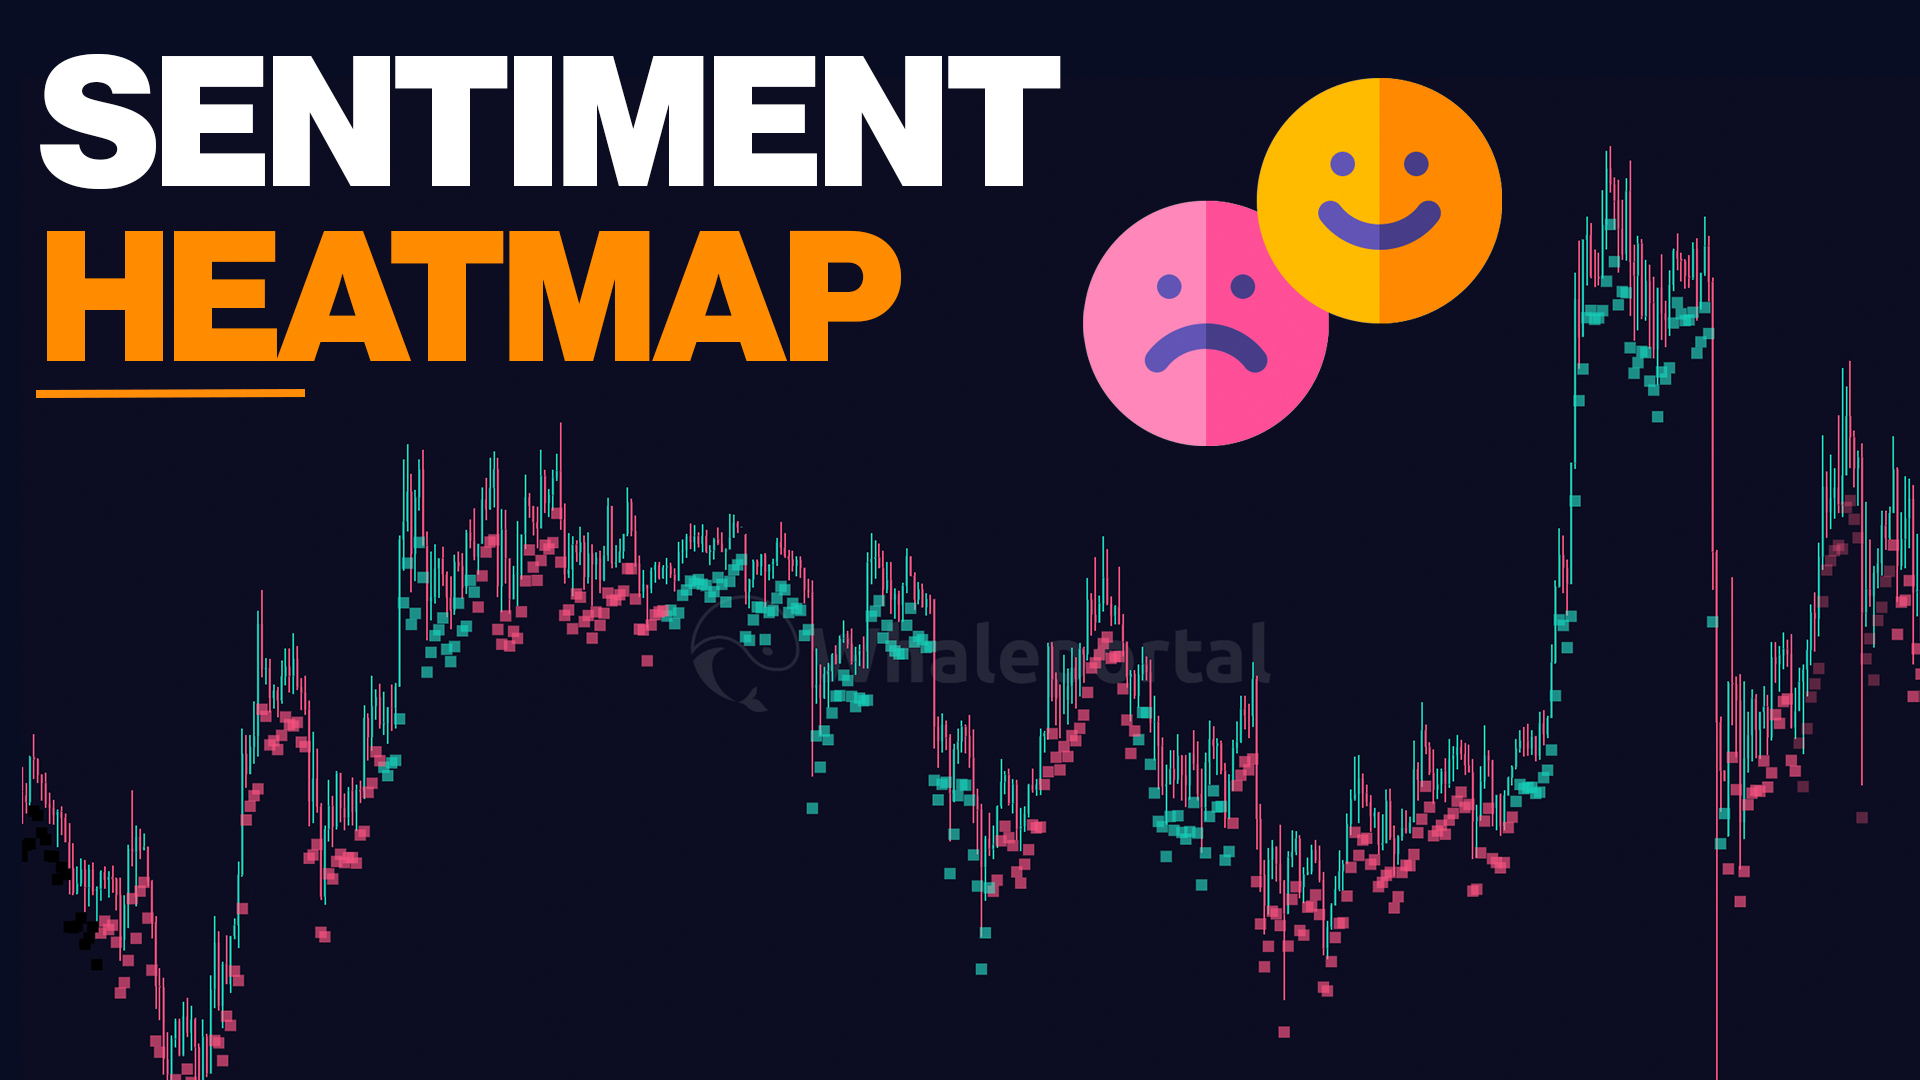 Sentiment Heatmap Explained